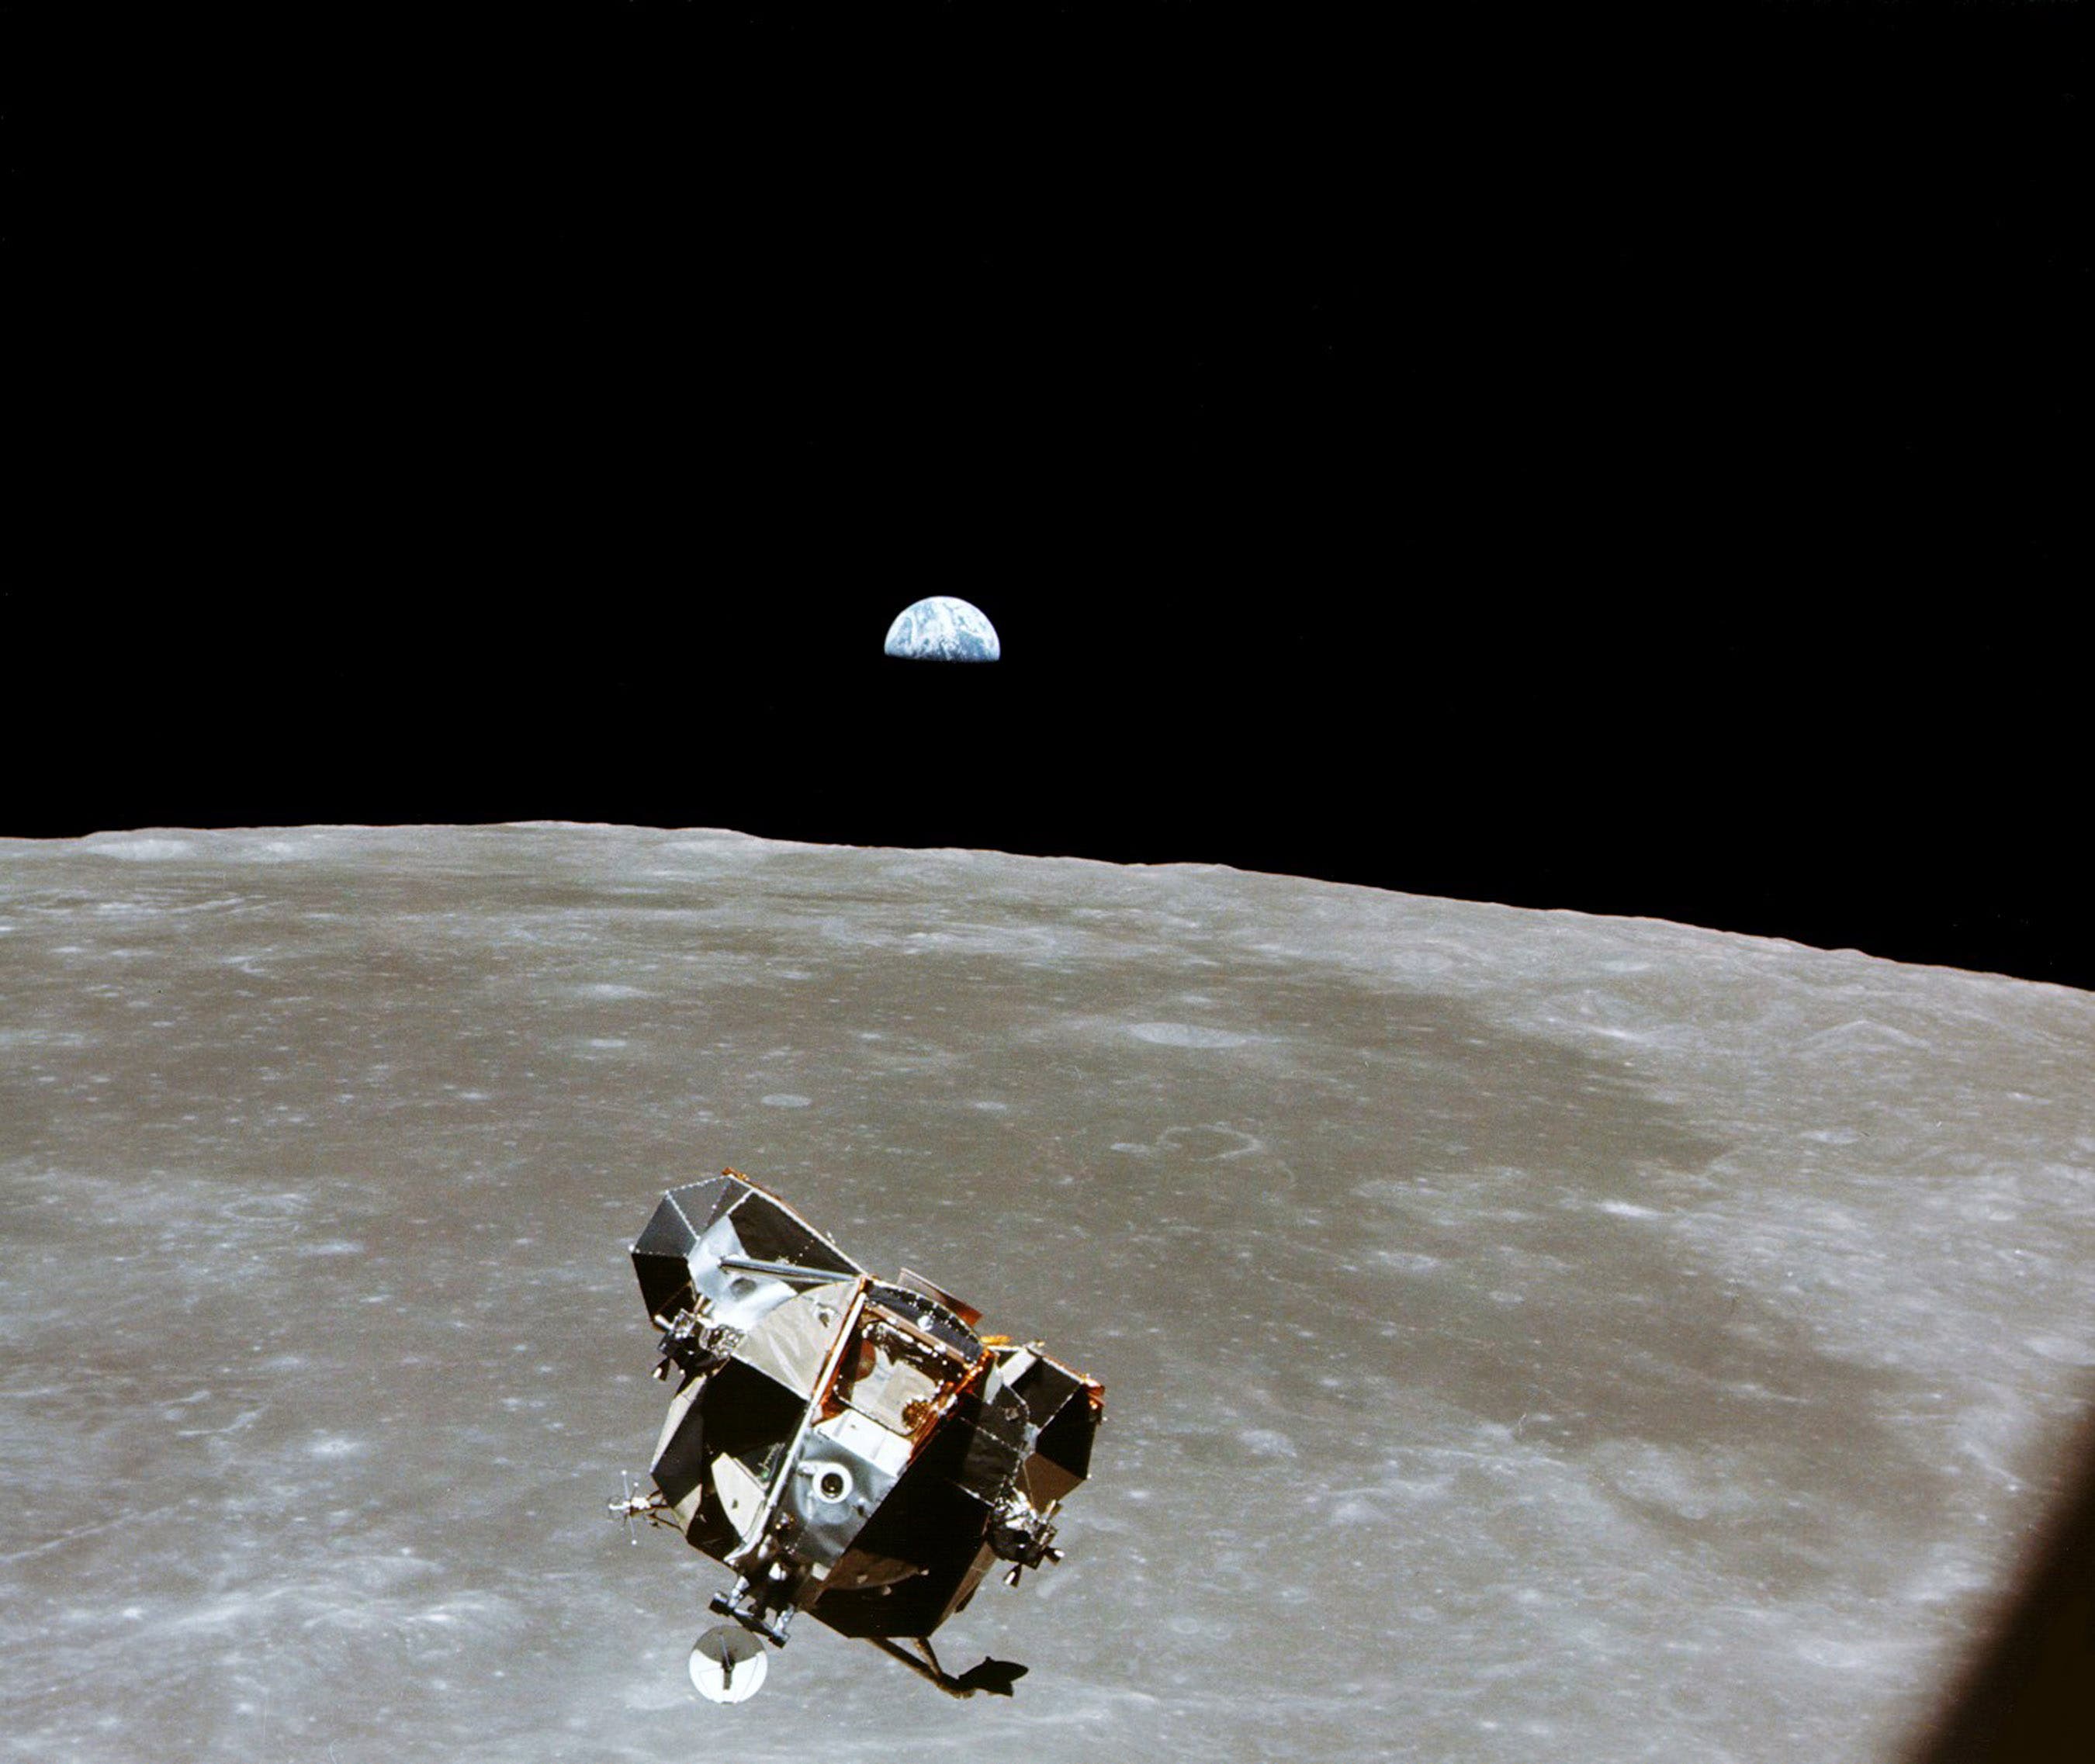 Apollo 11 ascent